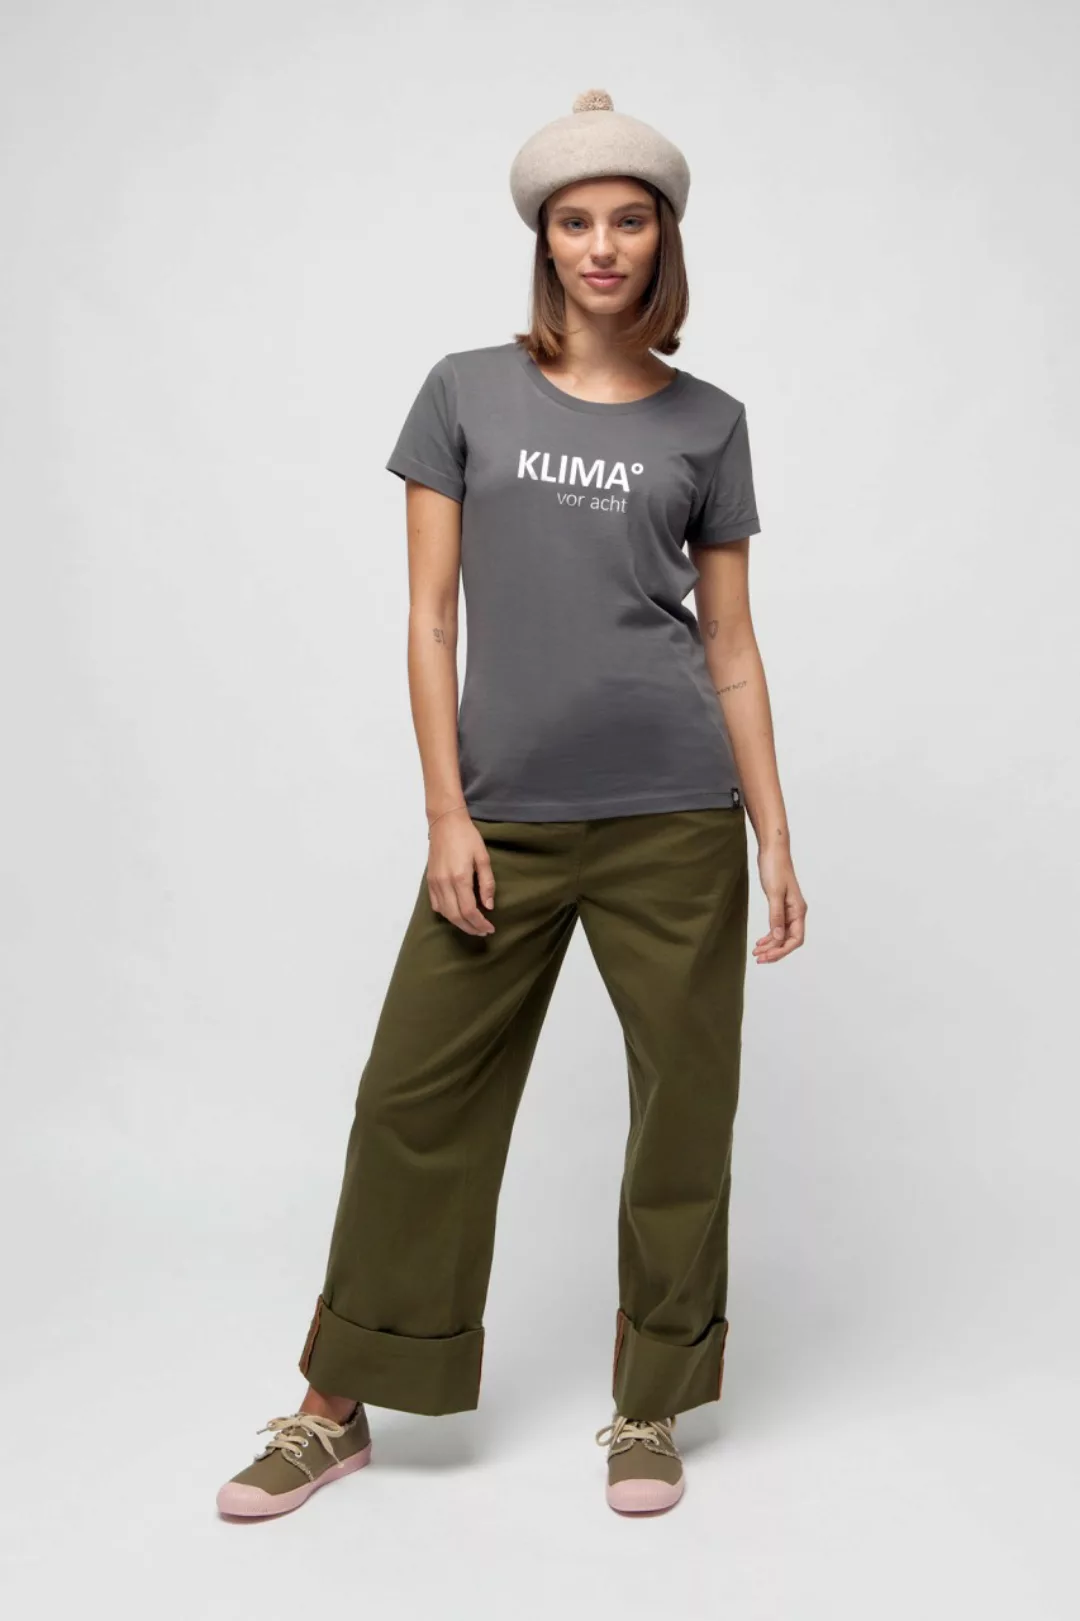 KLIMA° vor acht Bio T-Shirt für Frauen günstig online kaufen